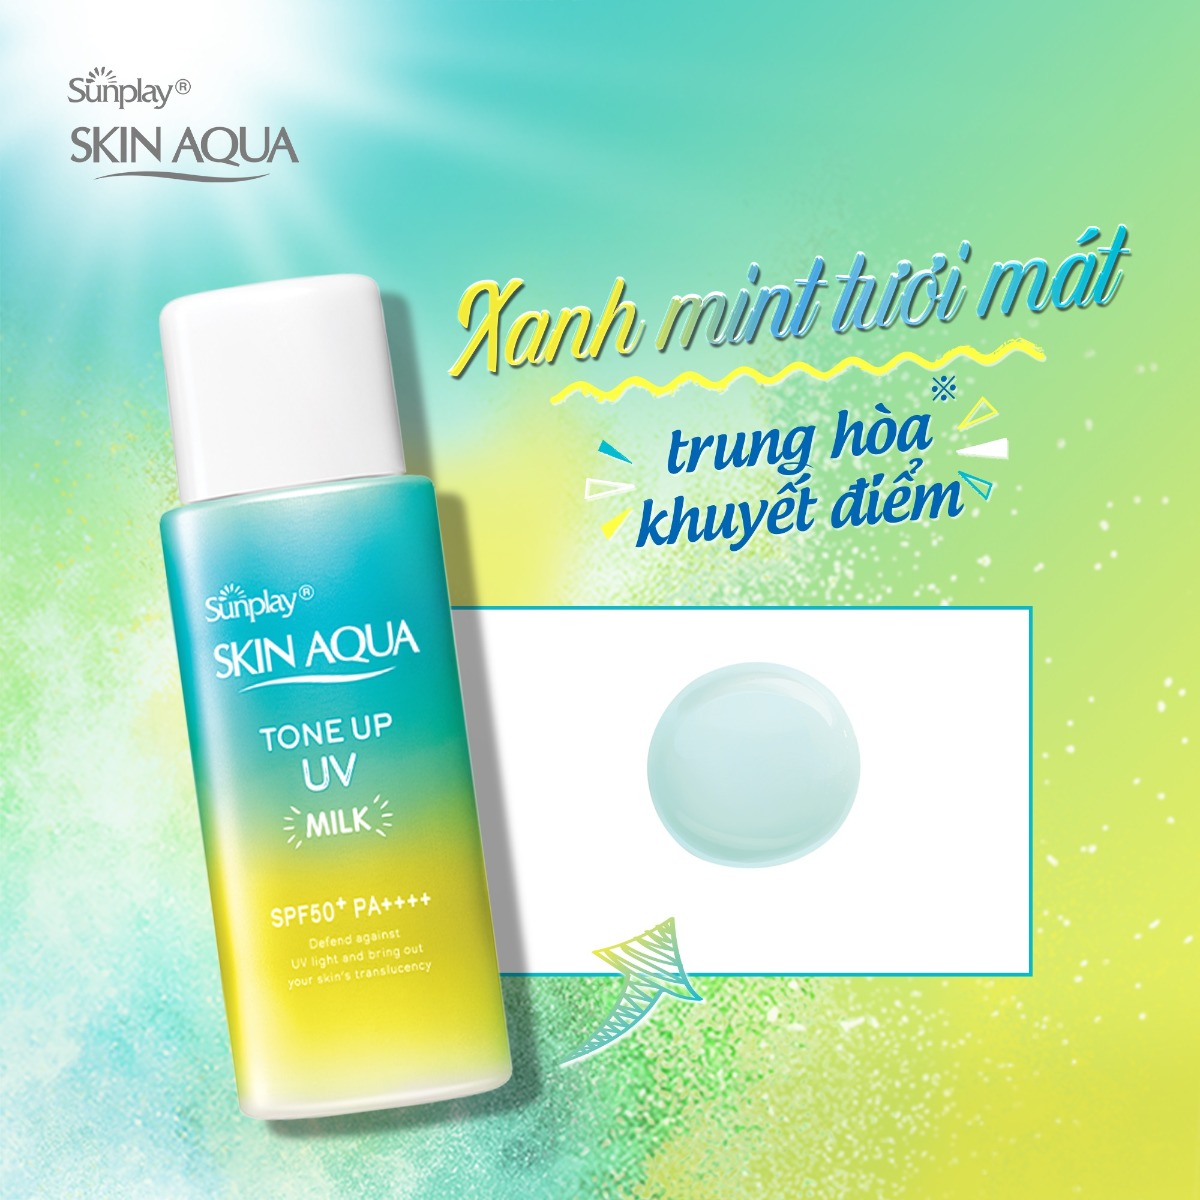 Sữa Chống Nắng Hiệu Chỉnh Sắc Da Sunplay Skin Aqua Tone Up UV Milk 5